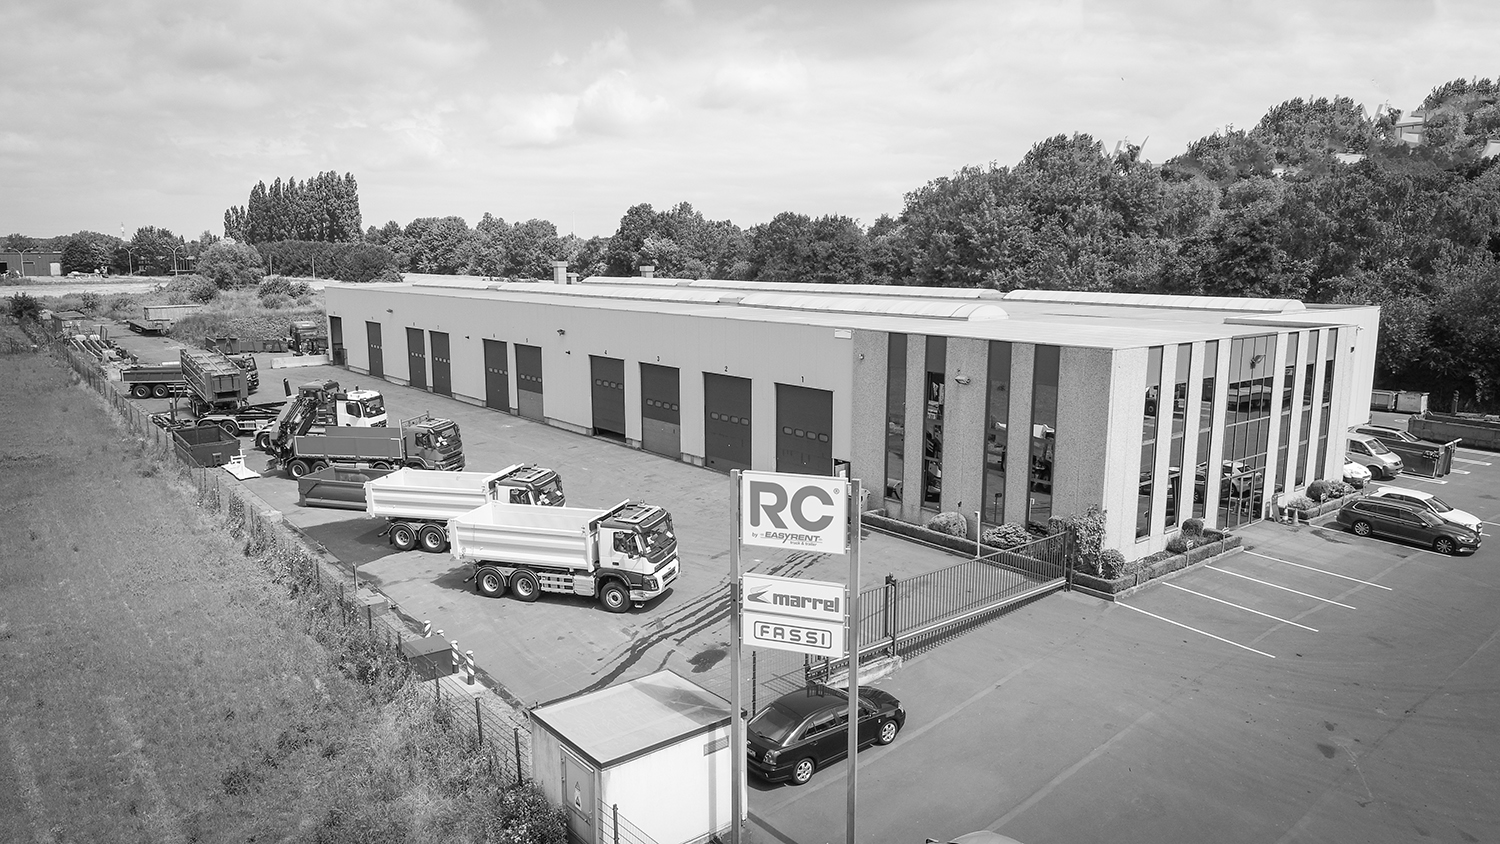 Luchtfoto van de site van Atelier RC in Herstal, België. Grote industriële hal met kiepwagens op de parkeerplaats.